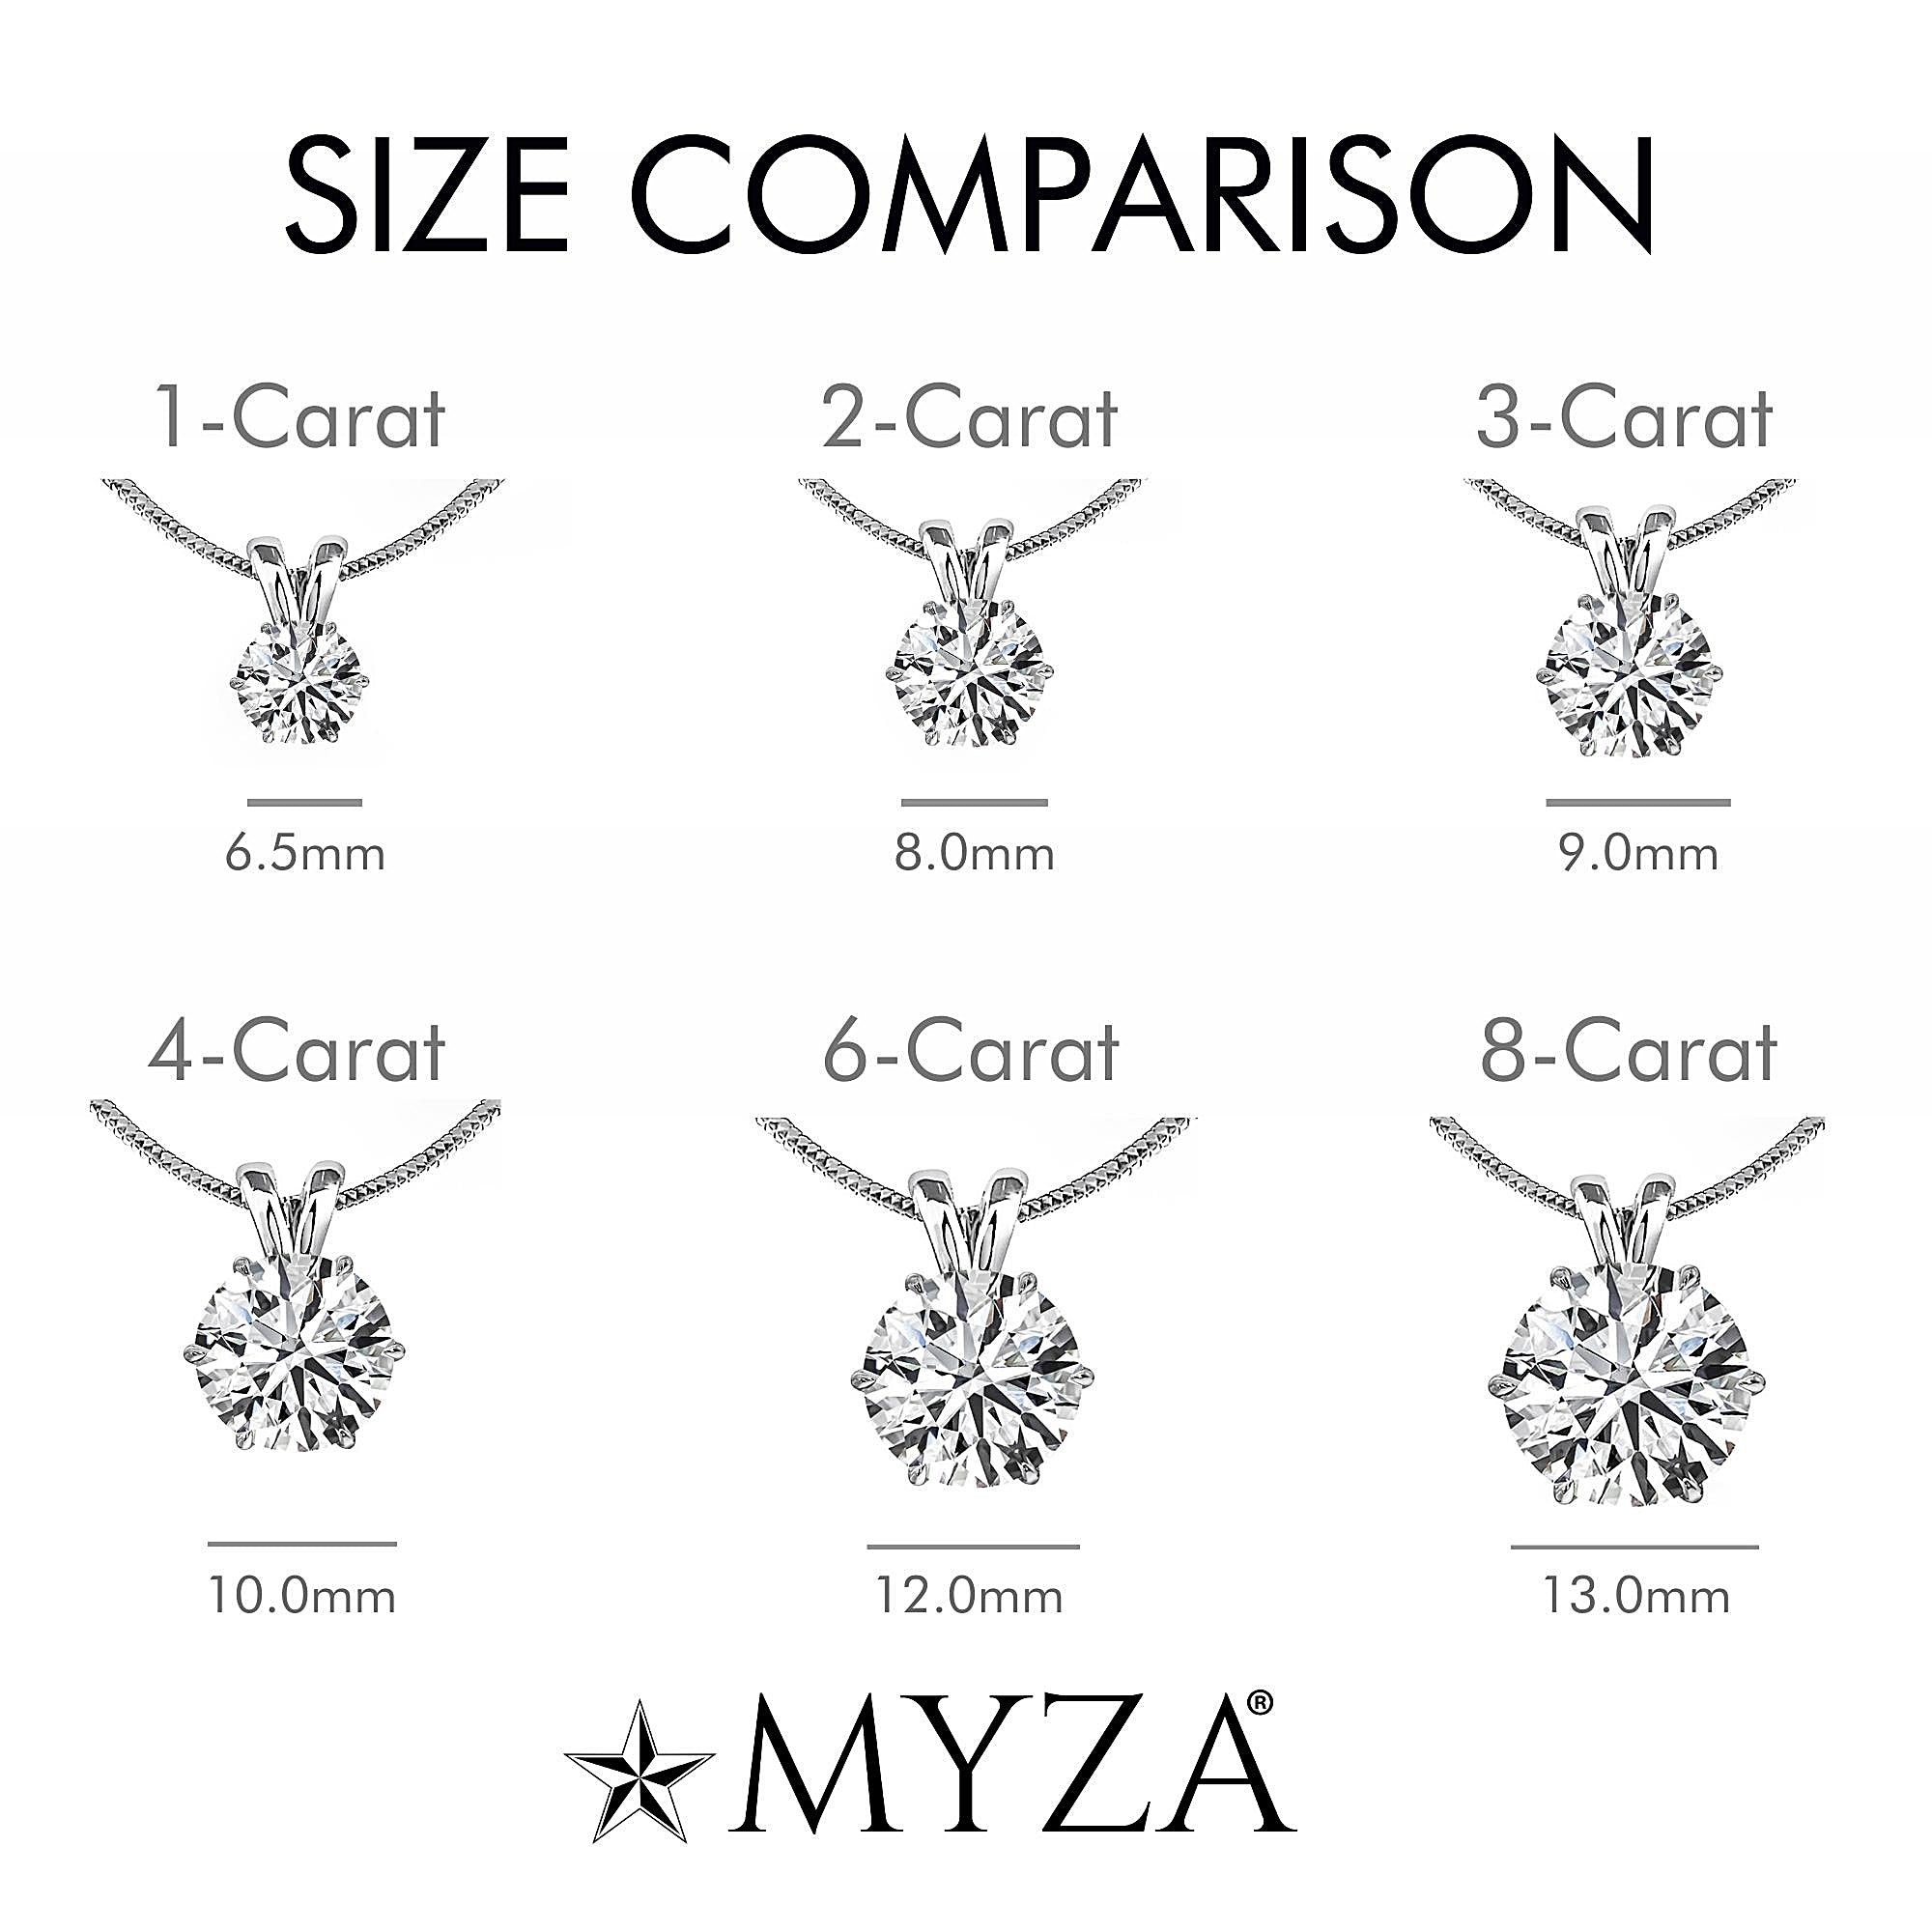 3-Carat MYZA Sterling Silver Necklace - MYZA 